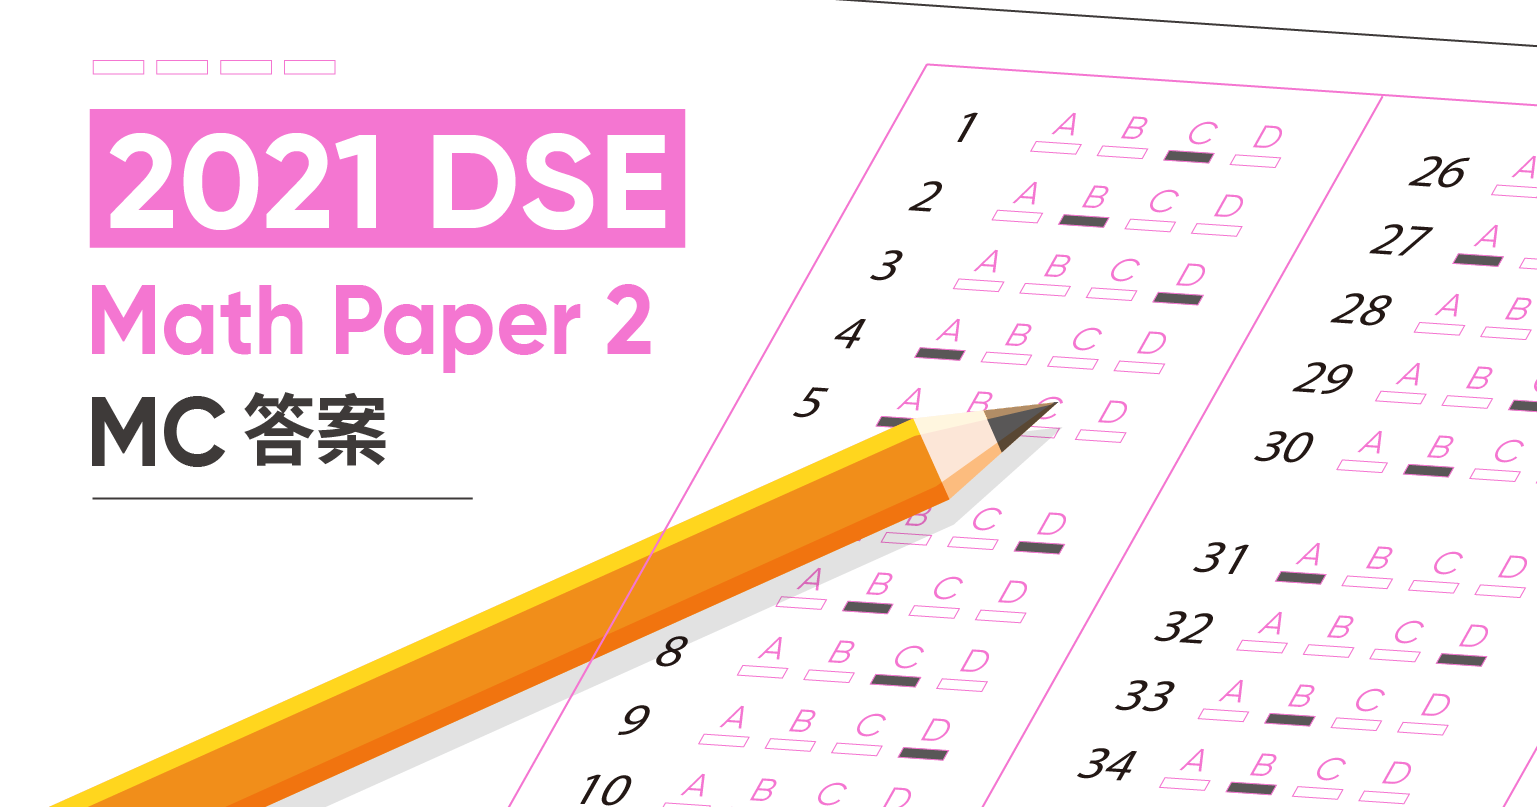 2021 DSE Math Paper 2 MC answer